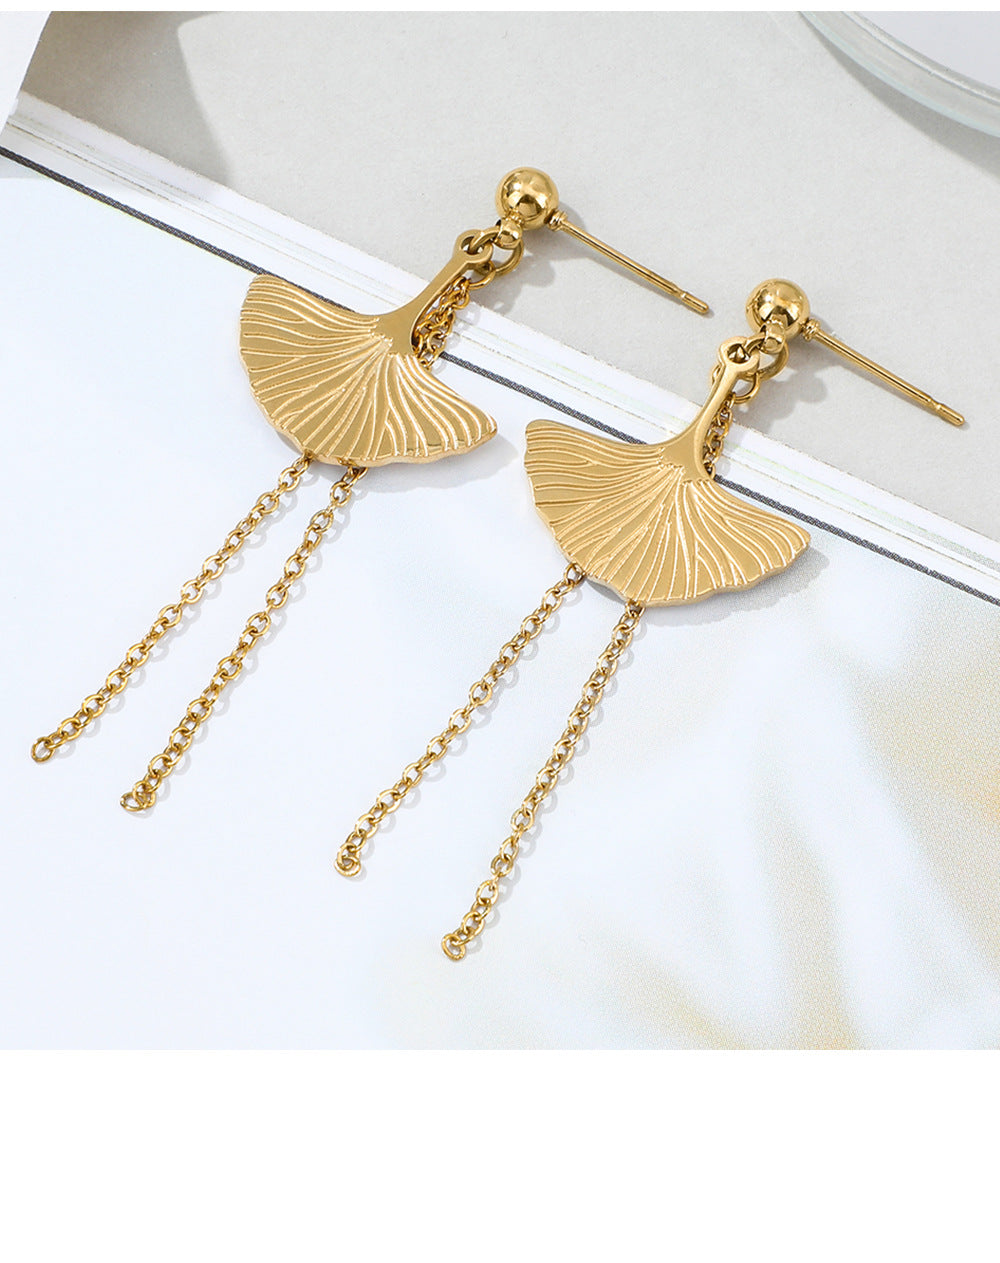 New Stainless Steel Fan-shaped Tassel Earrings Fashion Golden Leaf Long Earrings